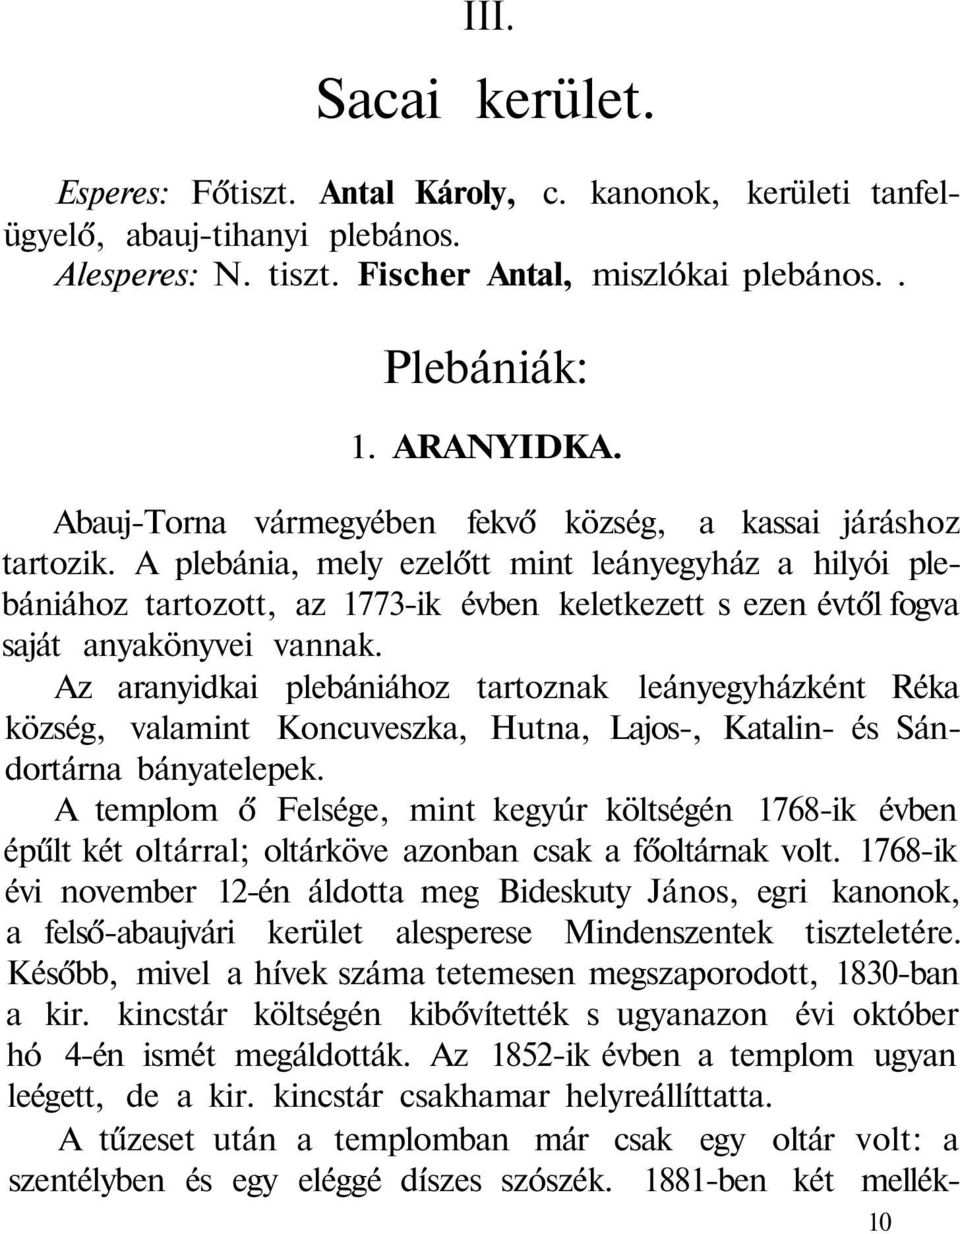 A plebánia, mely ezelőtt mint leányegyház a hilyói plebániához tartozott, az 1773-ik évben keletkezett s ezen évtől fogva saját anyakönyvei vannak.